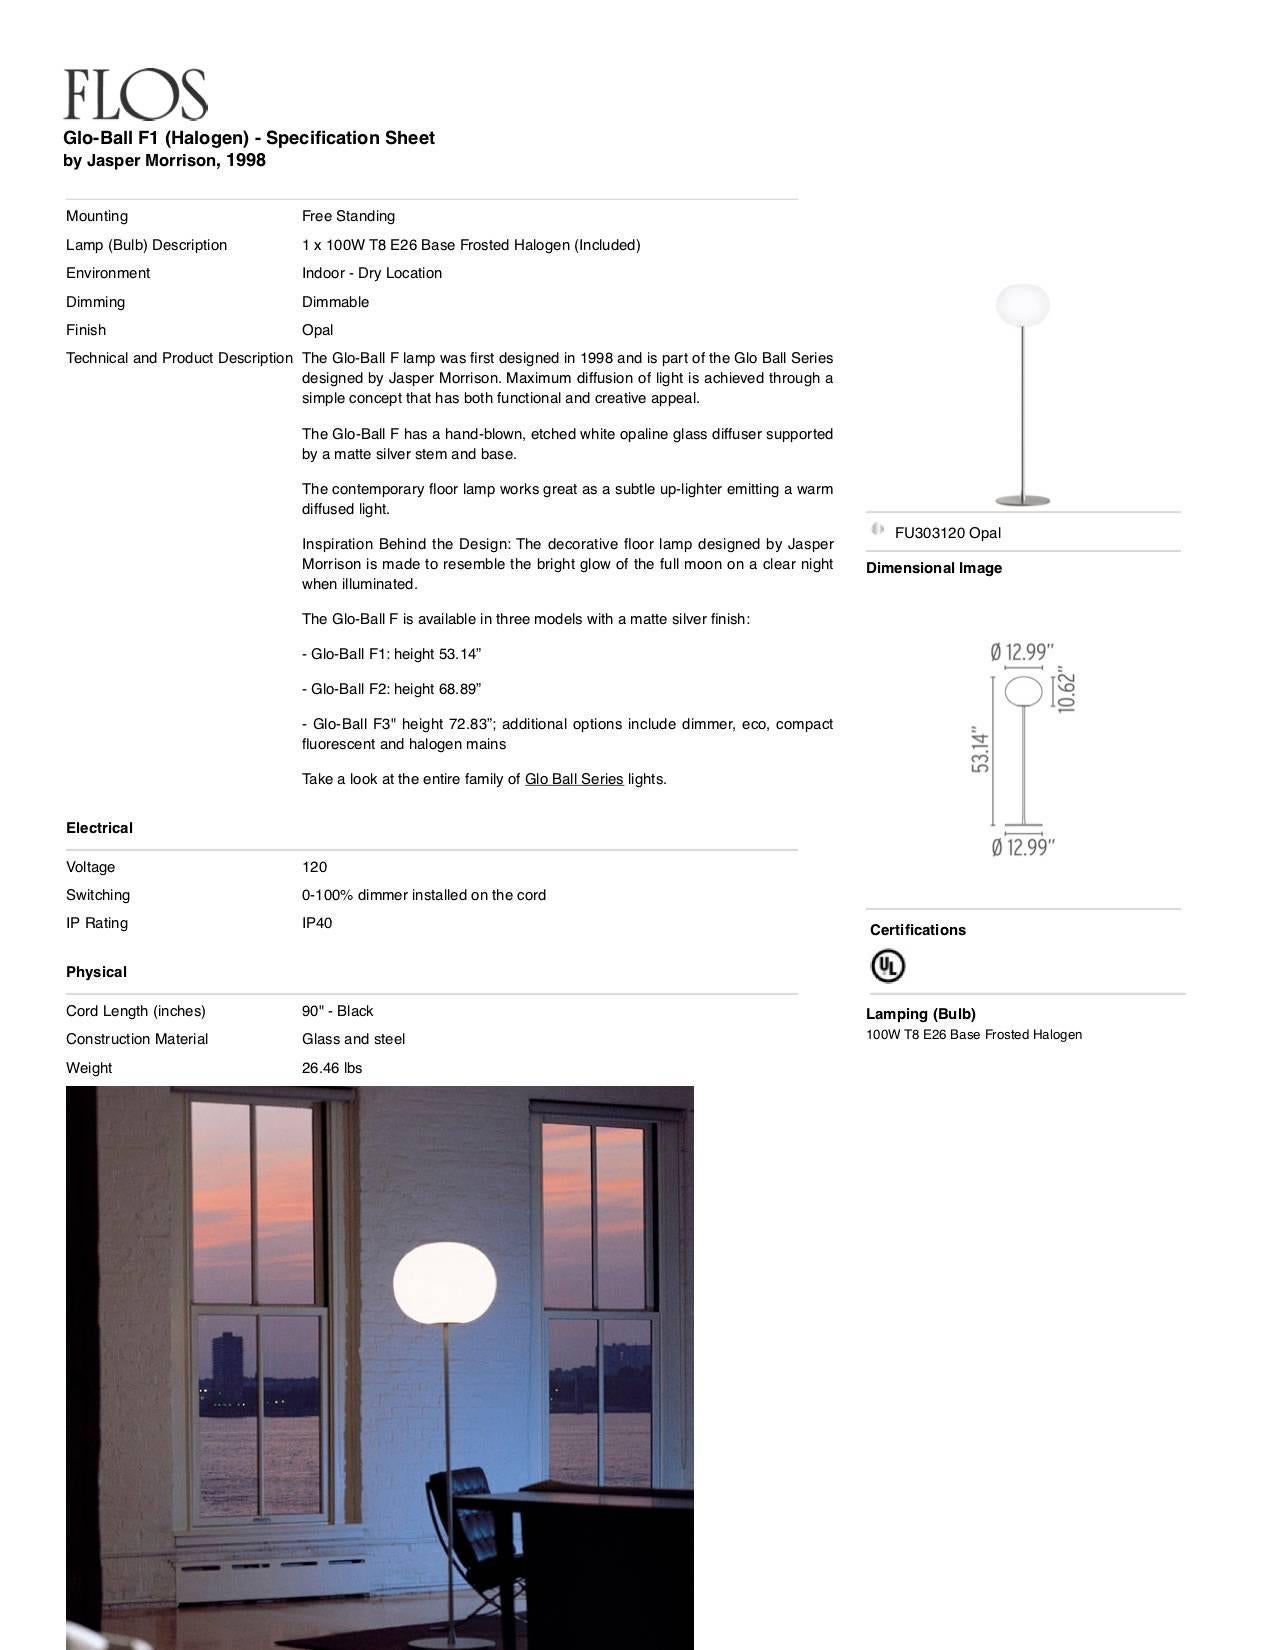 Italian Jasper Morrison Modern Sphere Glass Stainless Steel F1 Floor Lamp for FLOS For Sale